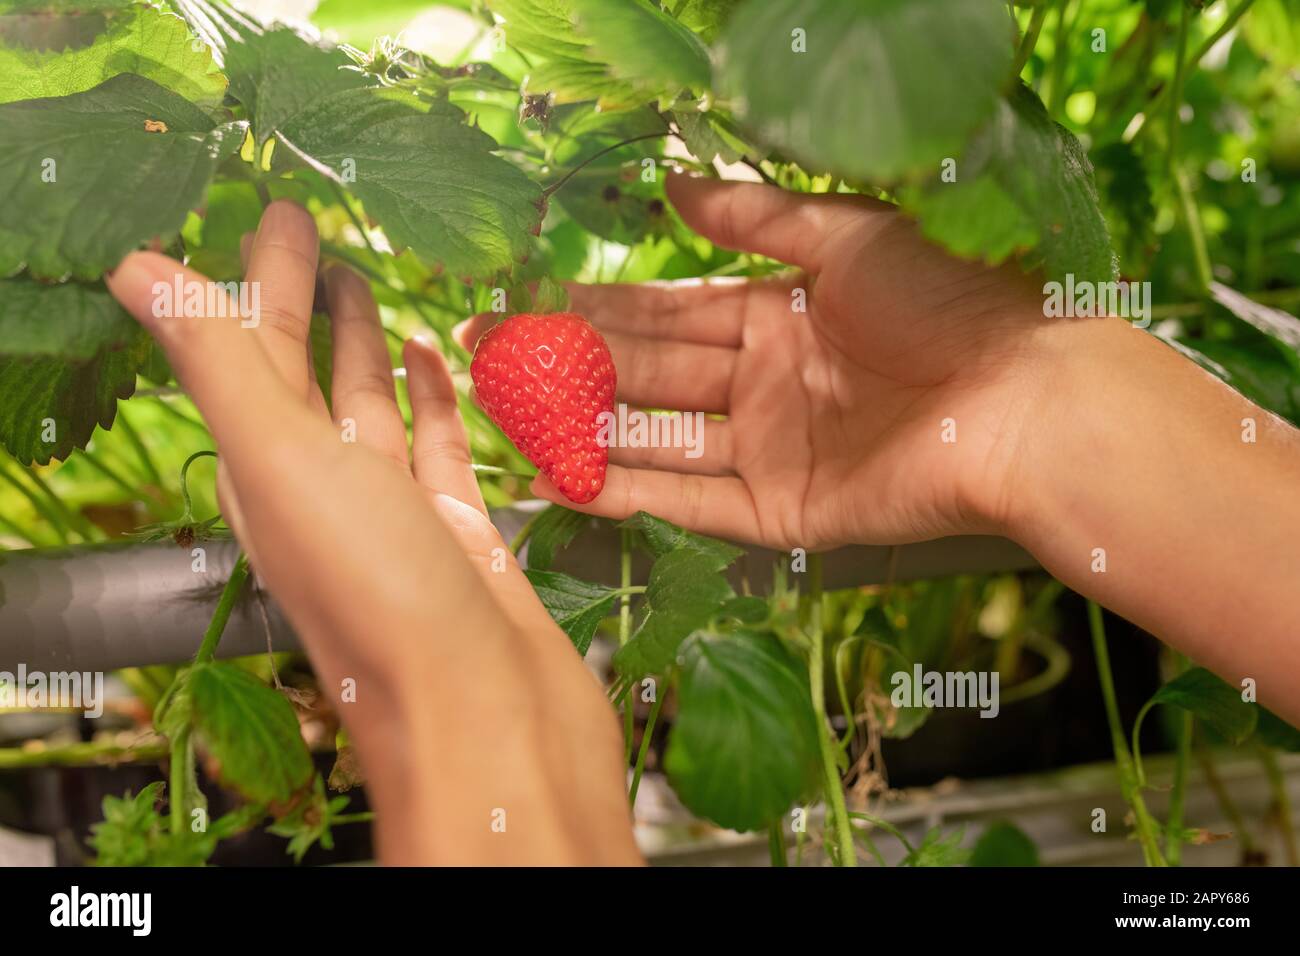 Hände junger Gärtner oder Gewächshausarbeiter, die reife rote Erdbeere halten Stockfoto